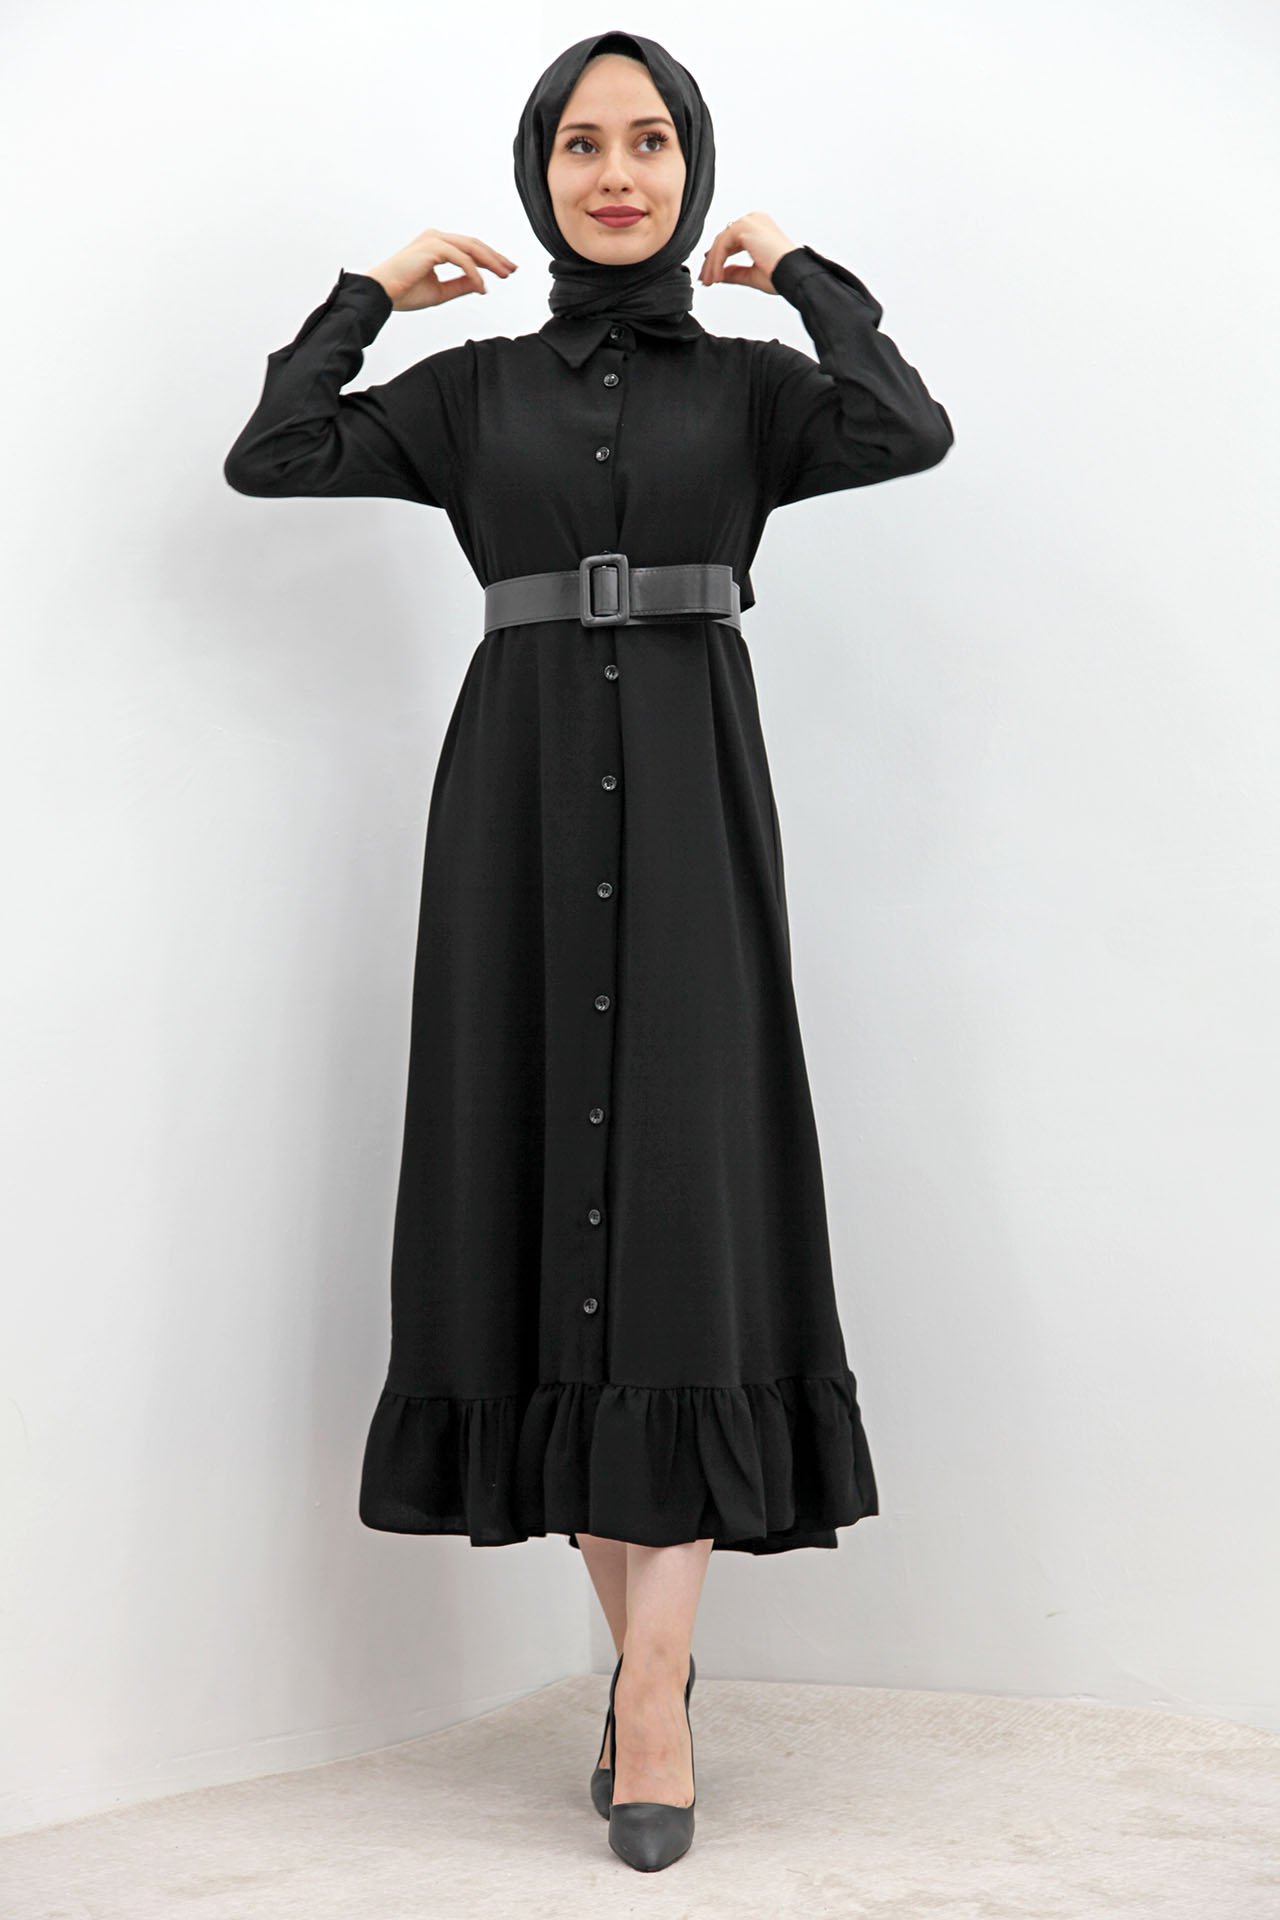 GİZAGİYİM - Altı Fırfırlı Düğmeli Tesettür Elbise Siyah